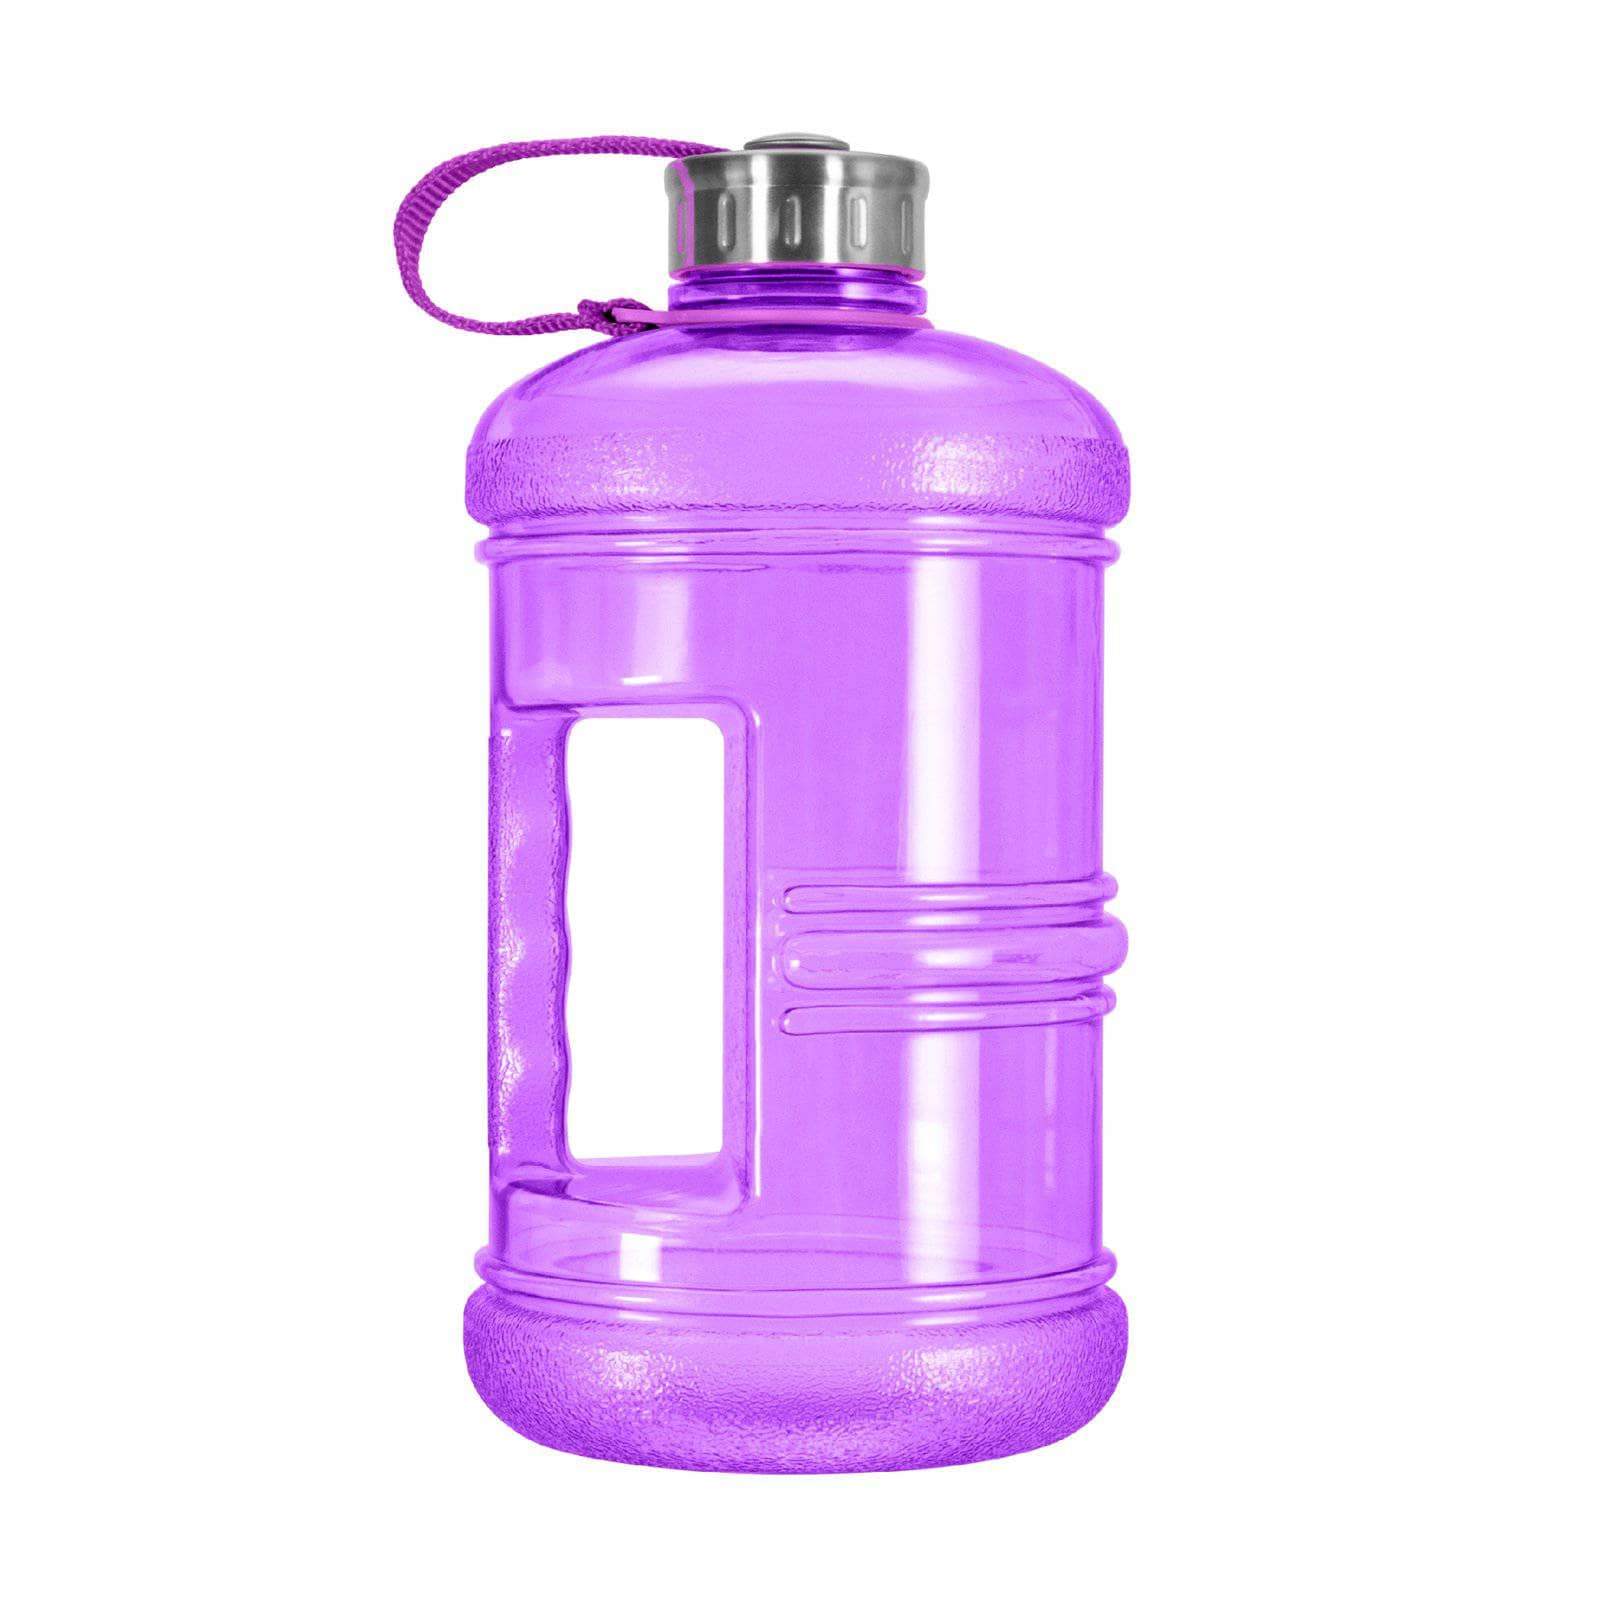 https://geobottles.com/cdn/shop/products/geo-bottles-bottles-2-3-litter-bpa-free-bottle-w-stainless-steel-cap-1470848892960.jpg?v=1589363915